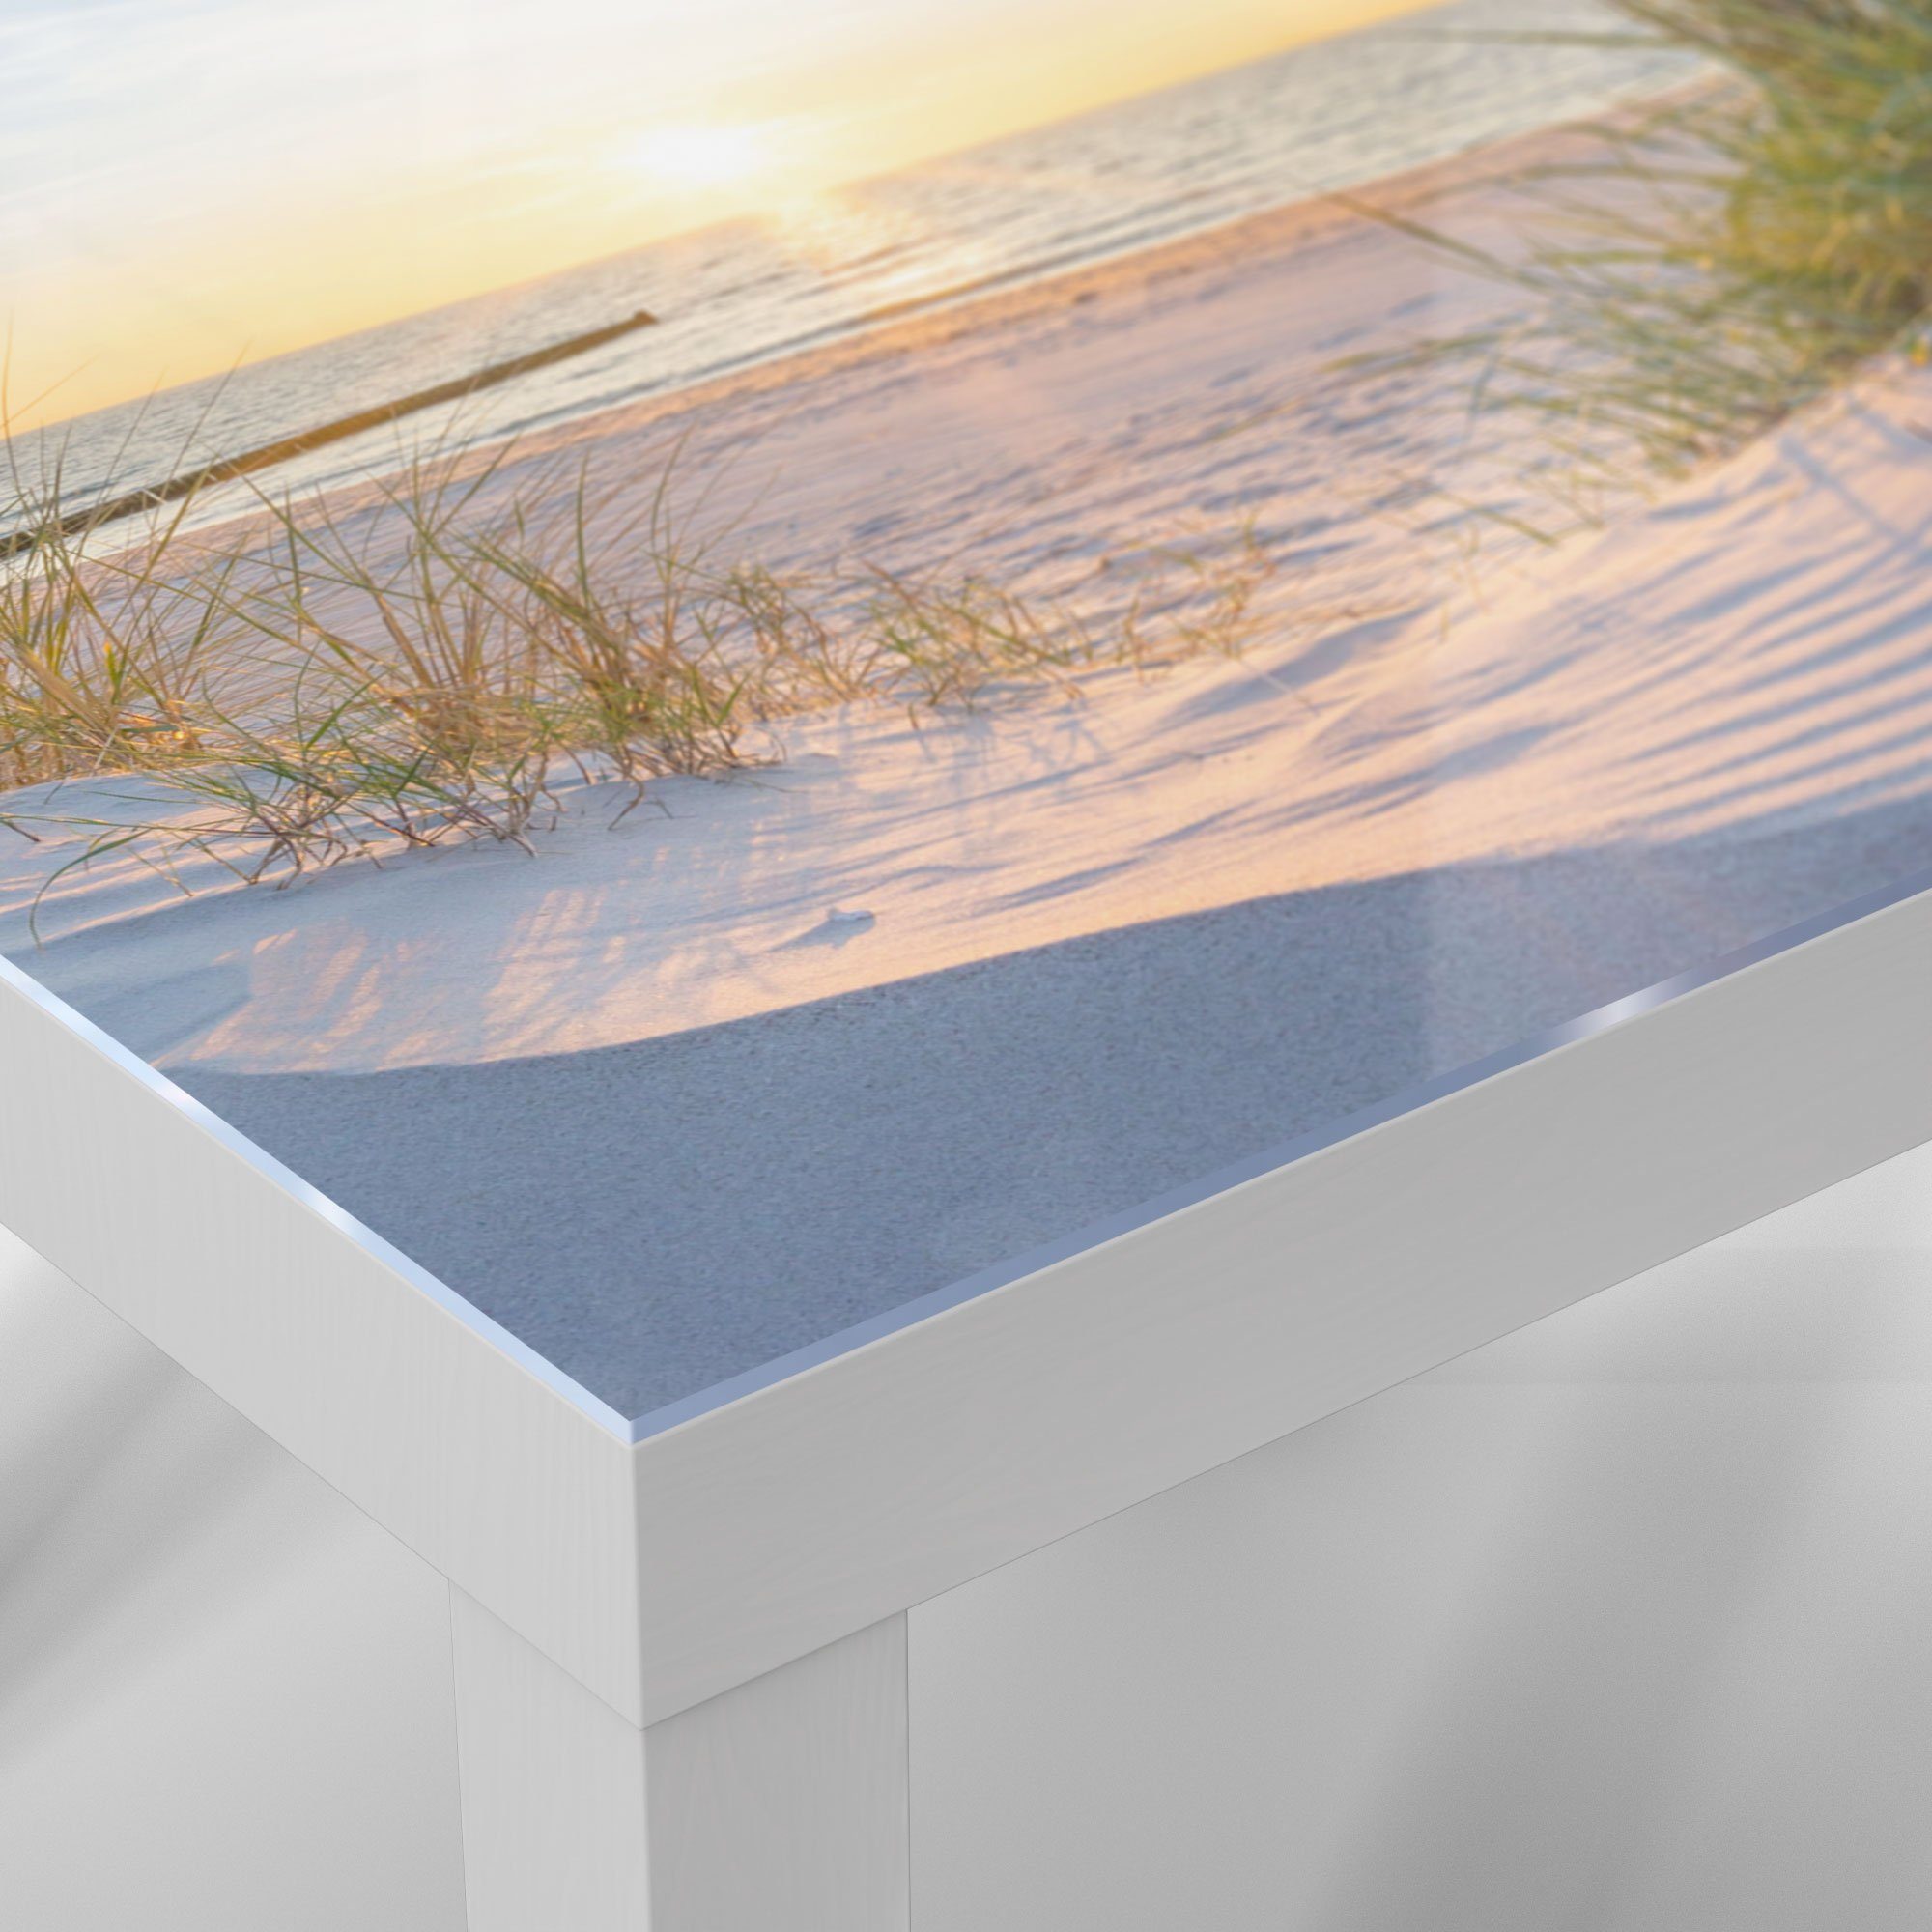 Ostsee', DEQORI Weiß Glas 'Abendsonne Glastisch Beistelltisch Couchtisch an der modern